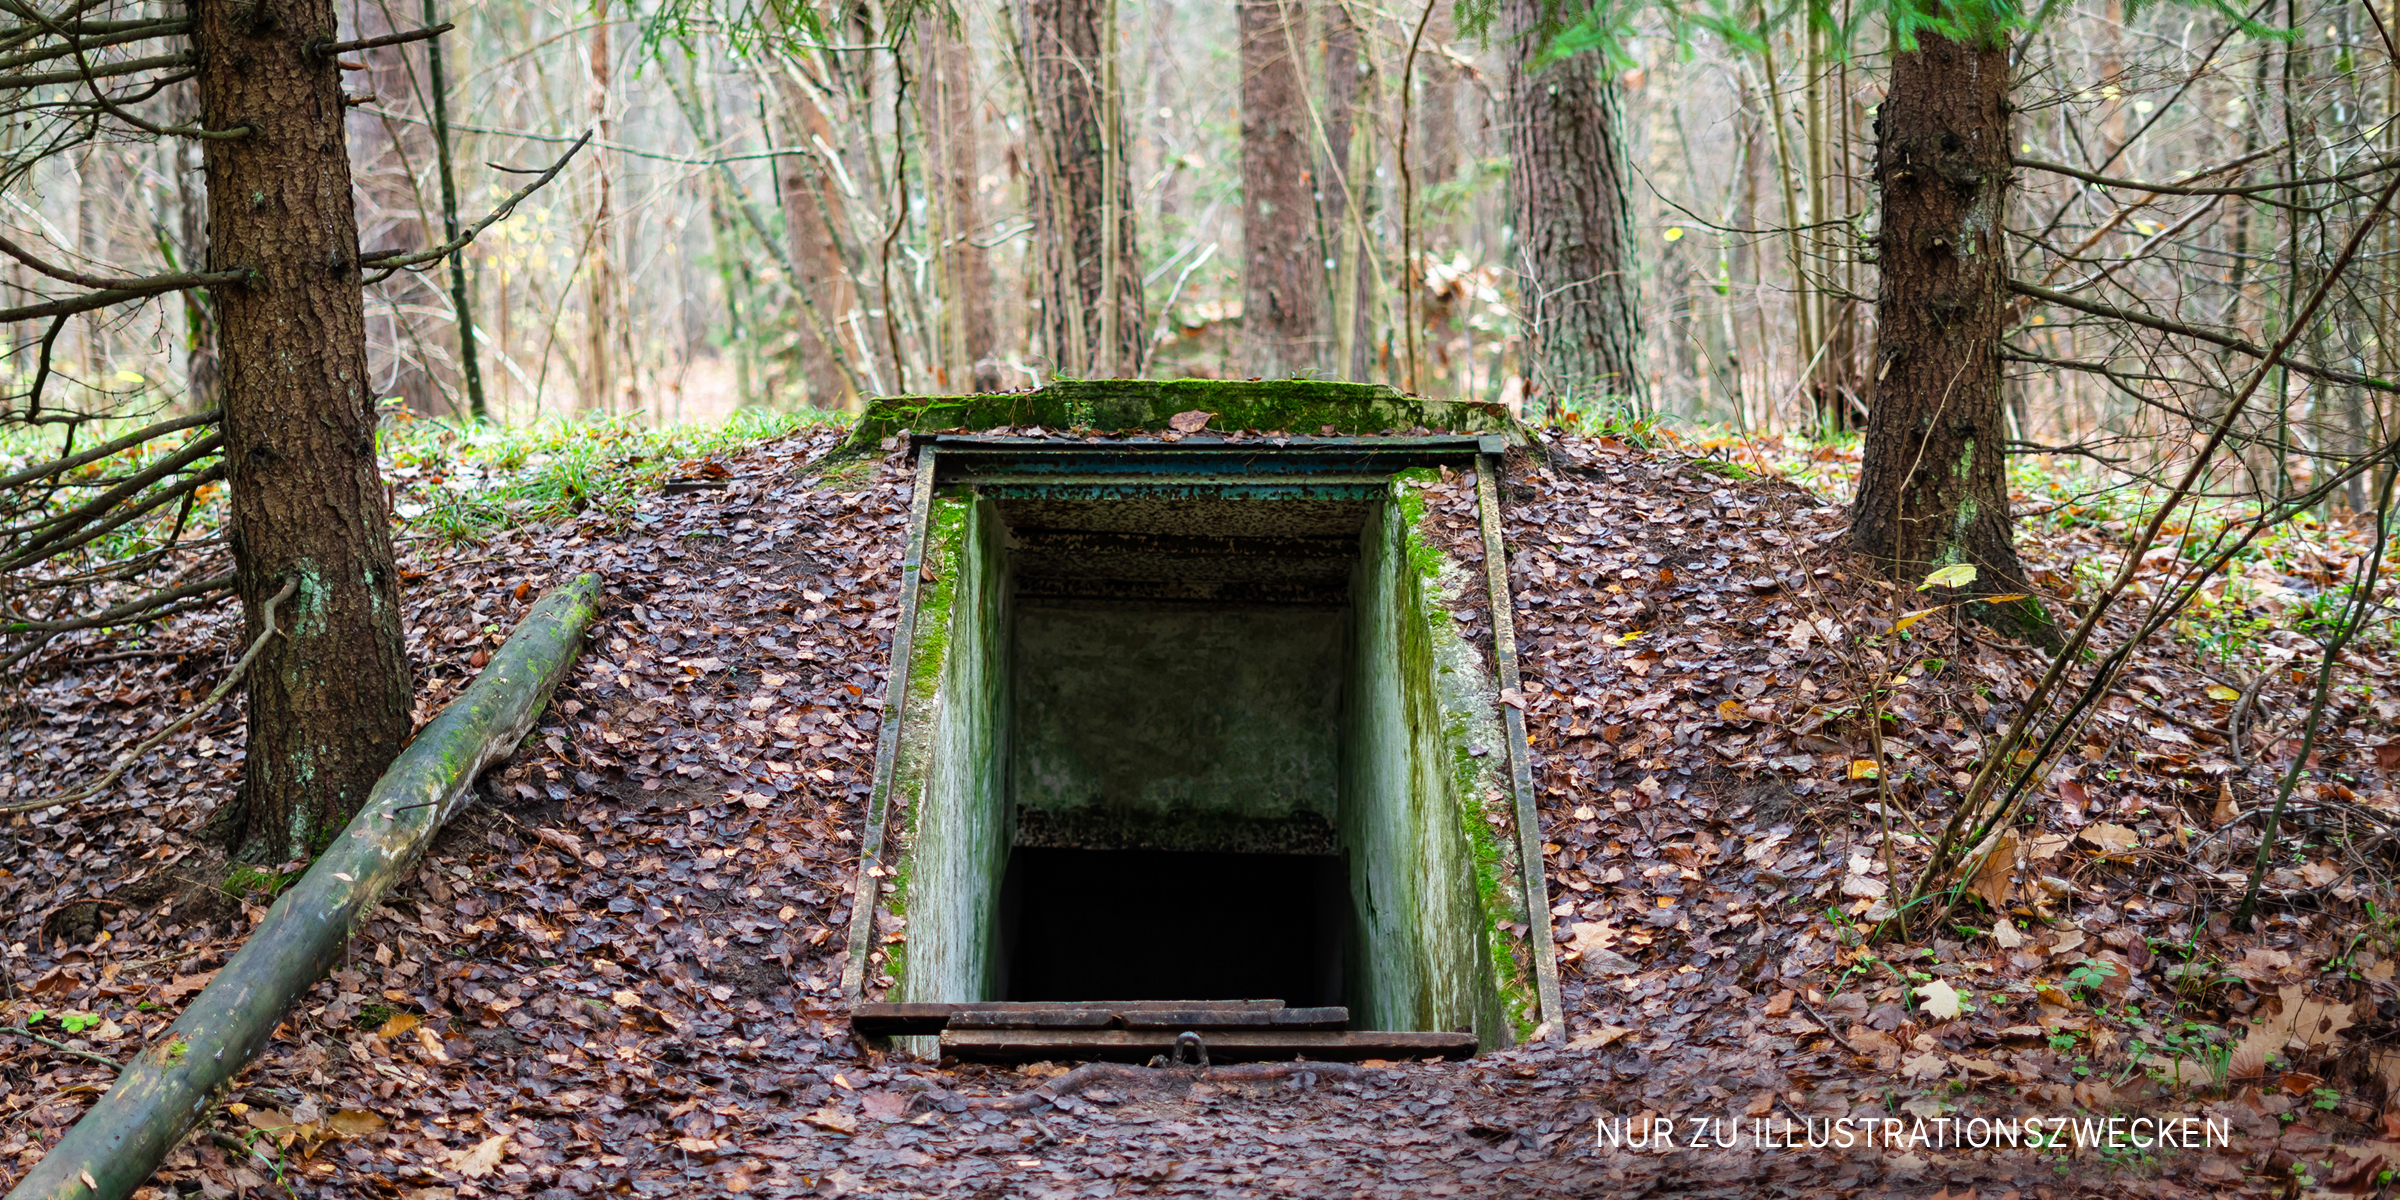 Eingang zum unterirdischen Bunker. | Quelle: Getty Images